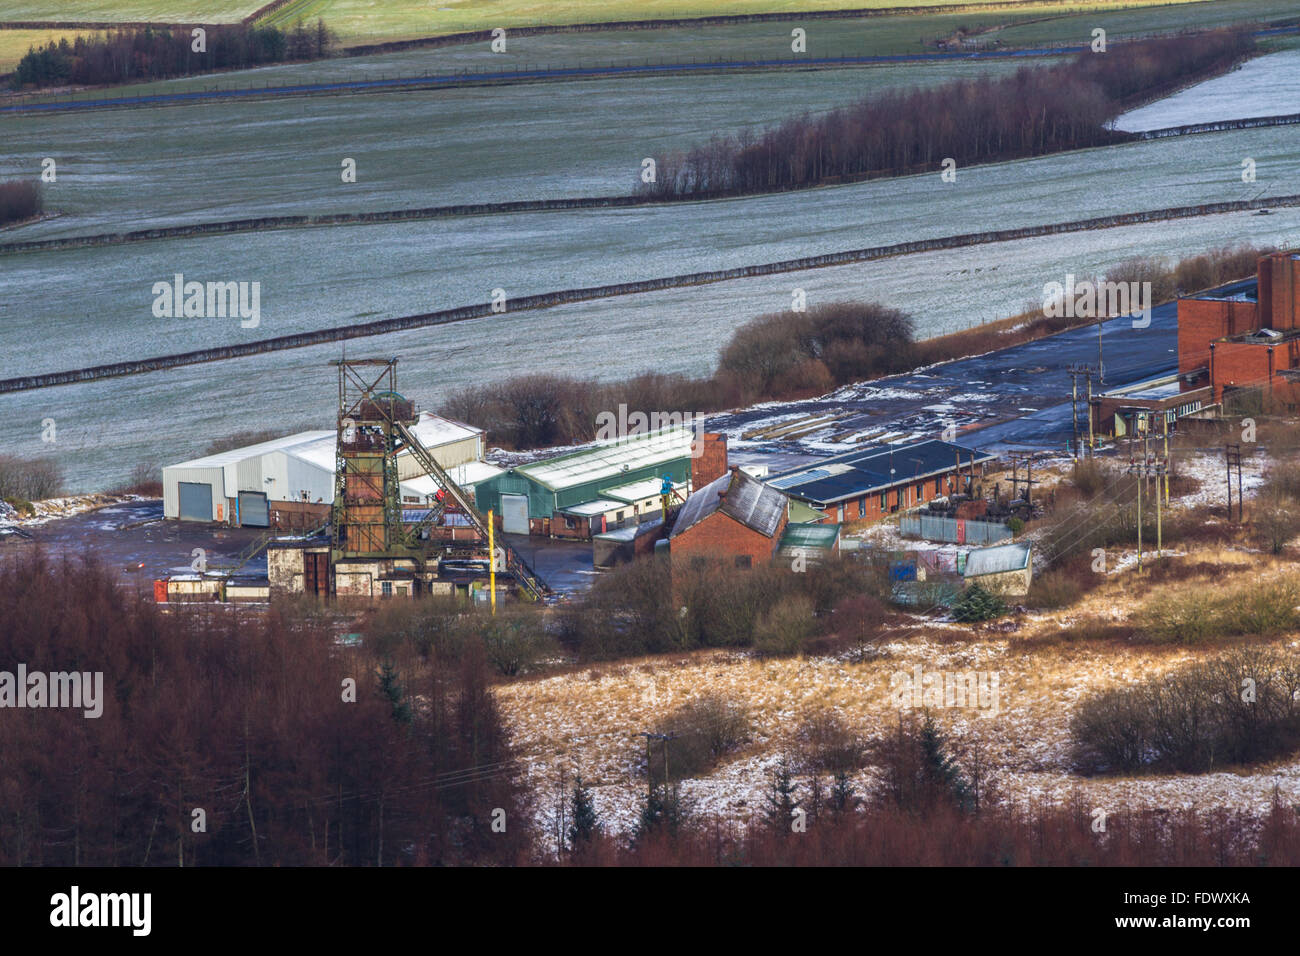 Blickte auf stillgelegten Tower Colliery. War die letzte Tiefe Coal Mine, Aberdare Cynon Valley, South Wales, Großbritannien. Stockfoto